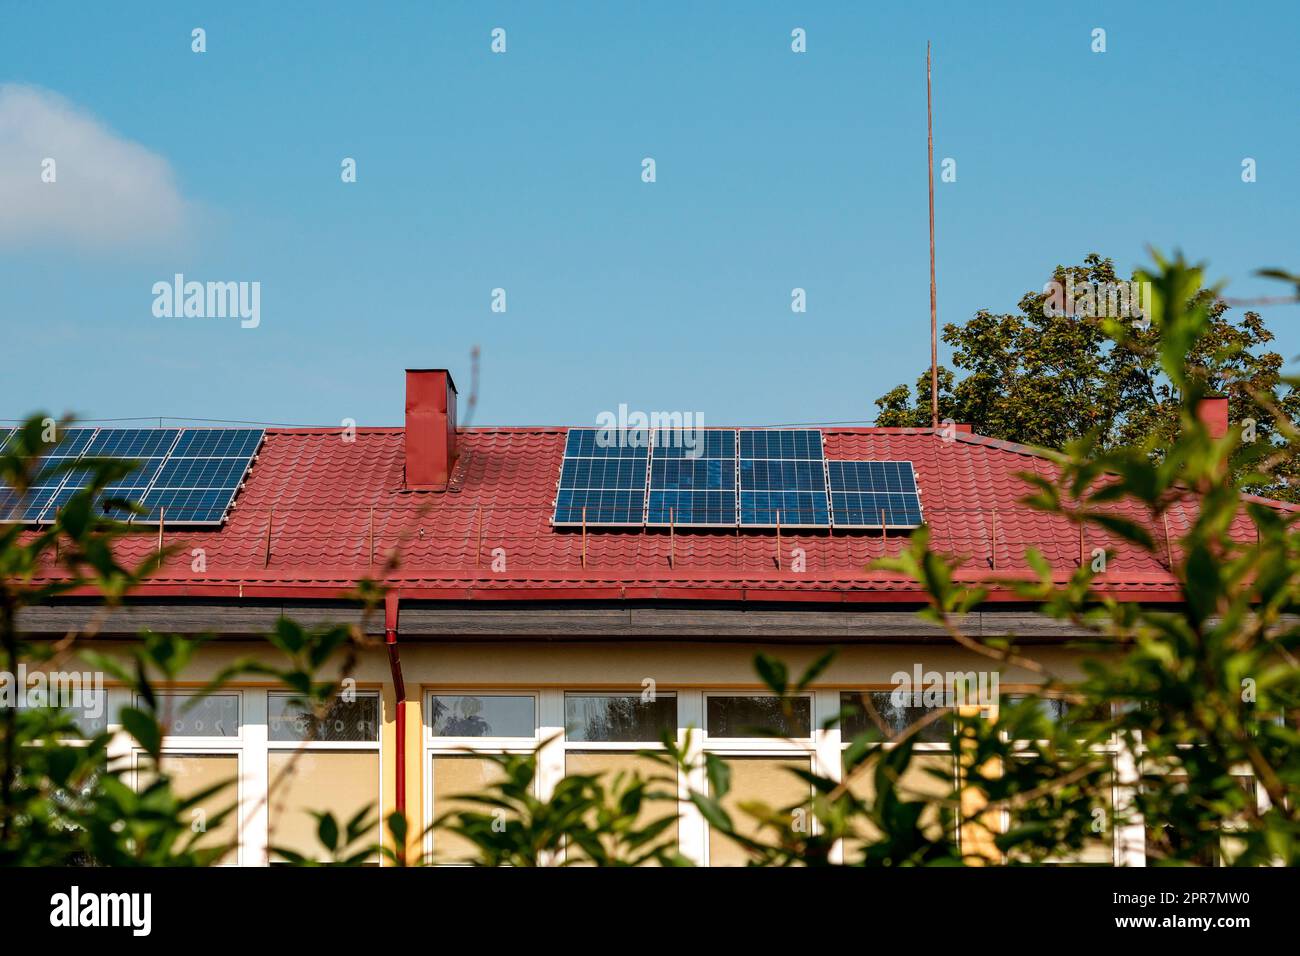 Photovoltaik- oder Solarpaneele auf einem roten Dach Stockfoto